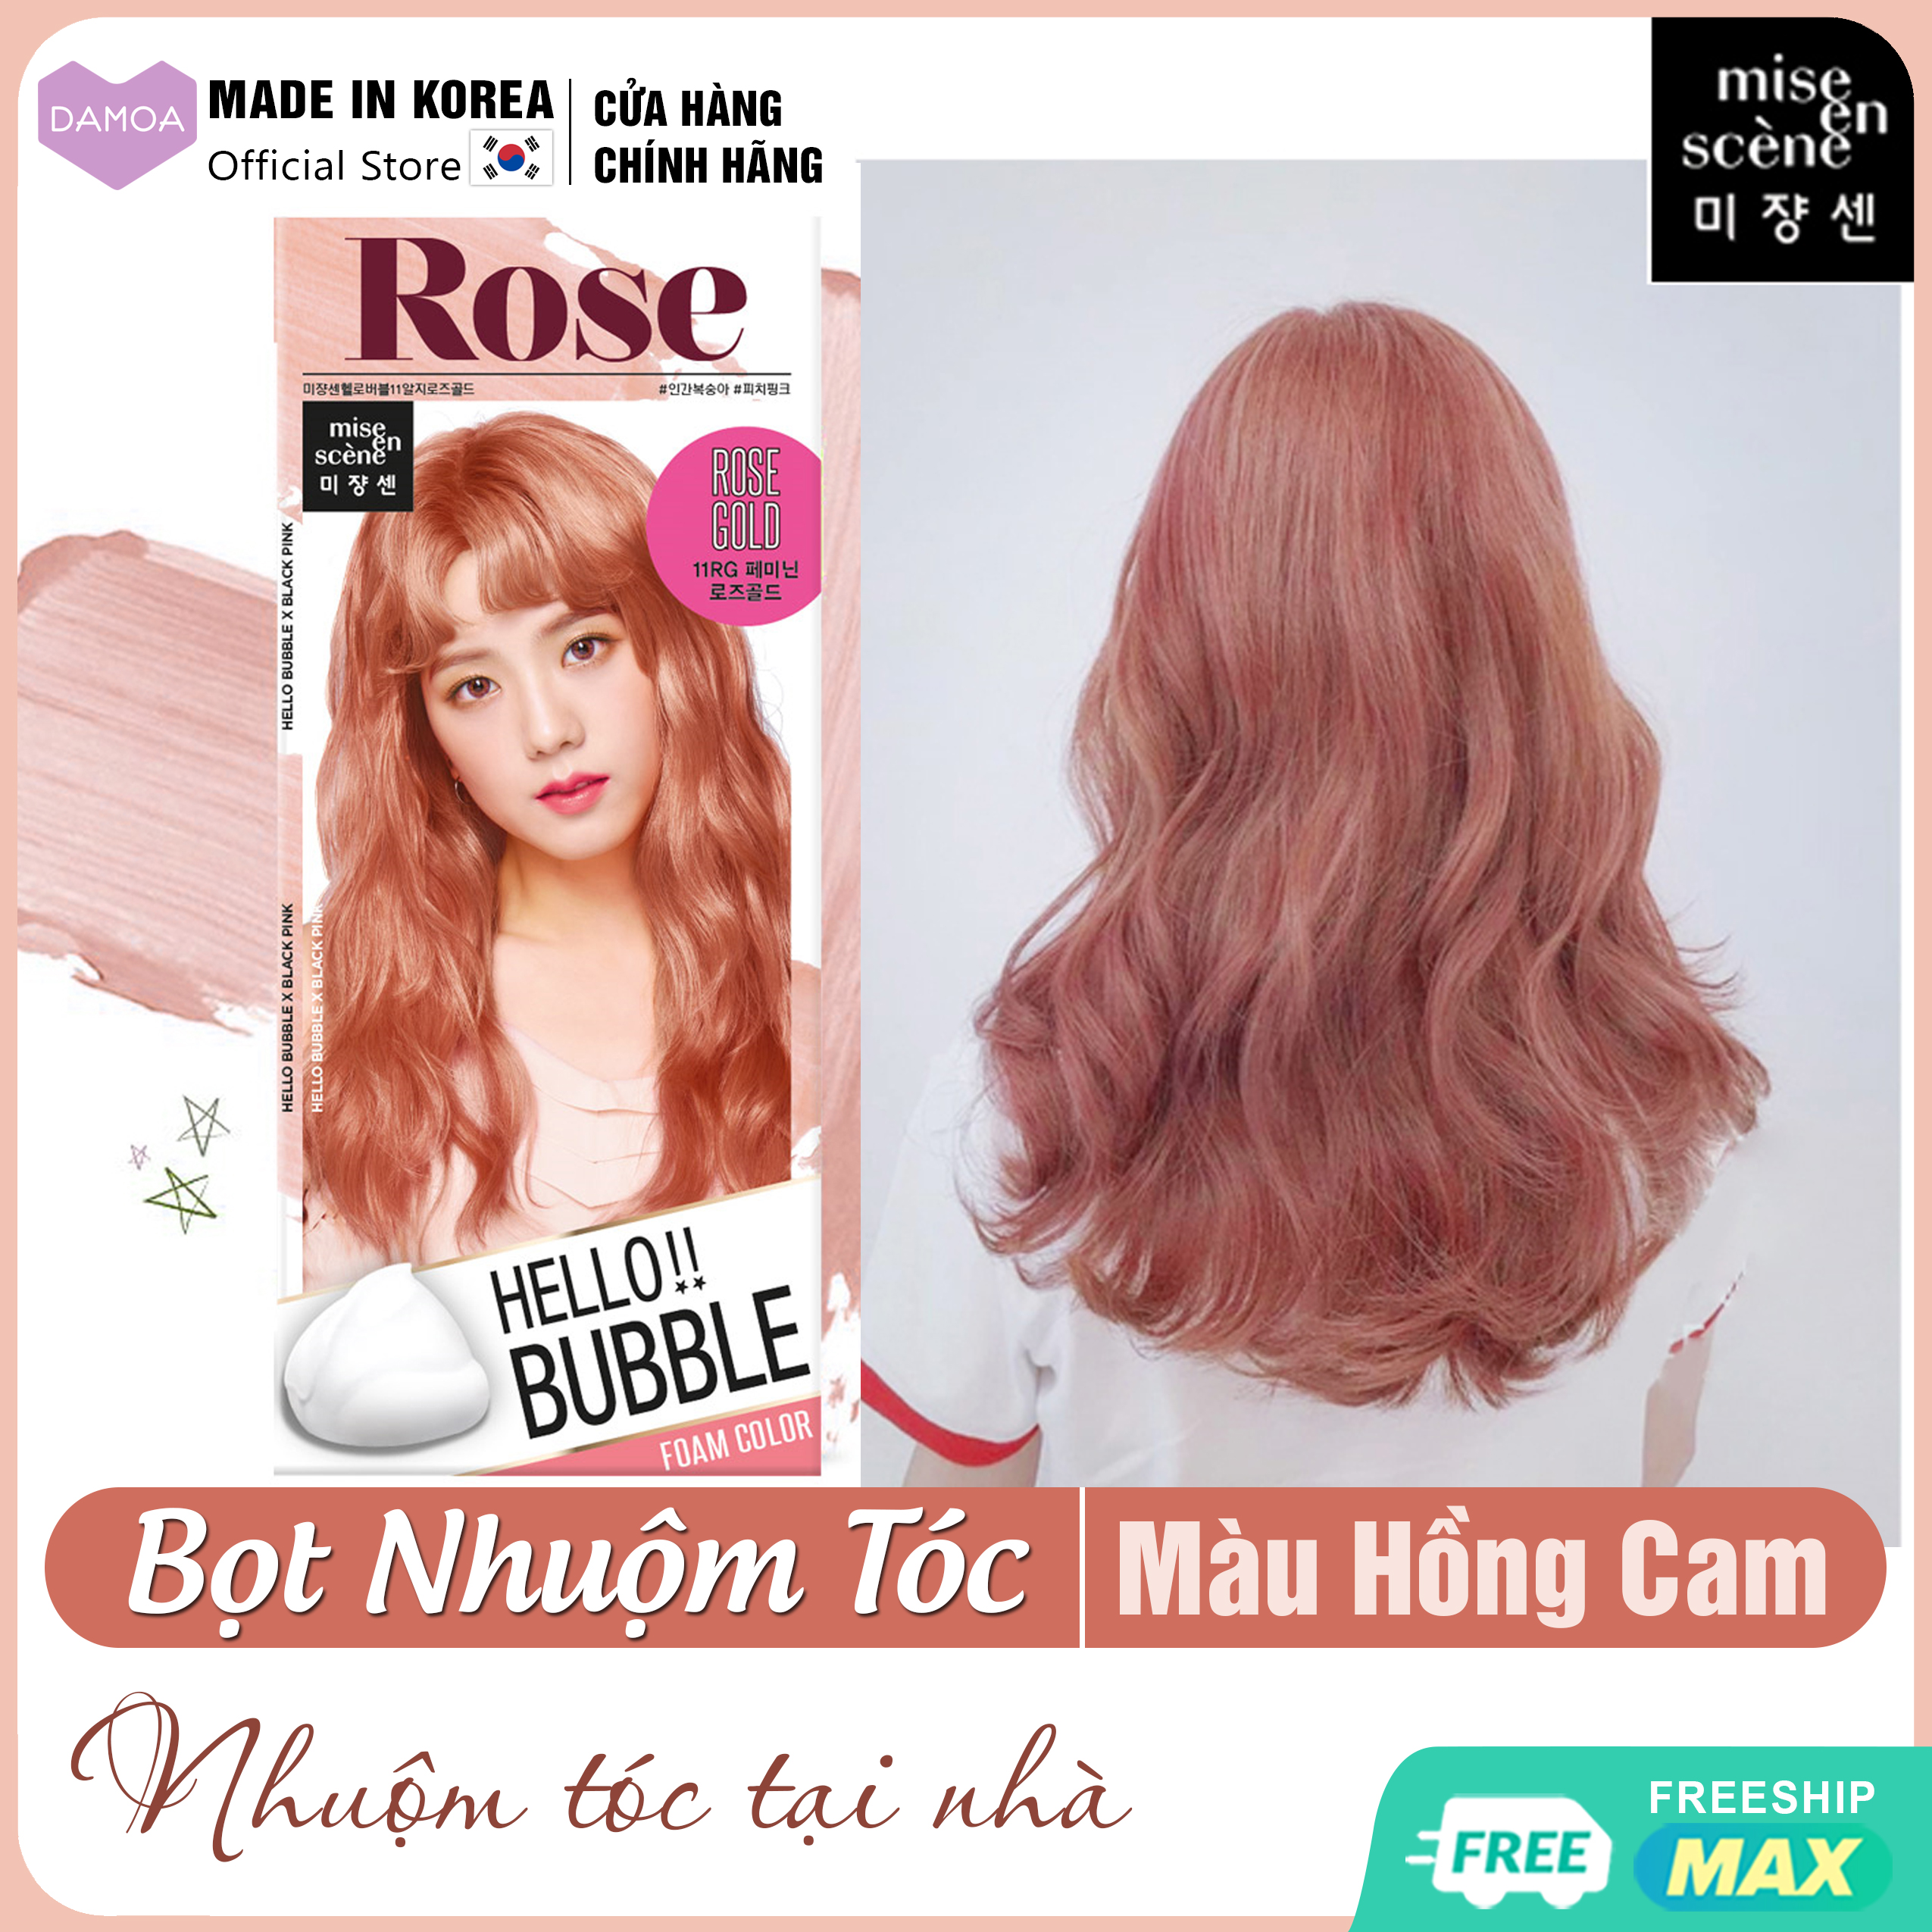 Tóc hồng cam luôn là lựa chọn thú vị cho những cô nàng yêu sự nổi bật, sáng tạo. Với sự kết hợp giữa màu hồng và cam, bạn sẽ trông nổi bật hơn so với những kiểu tóc khác. Hãy xem hình ảnh để cập nhật ngay kiểu tóc mới nhất này.